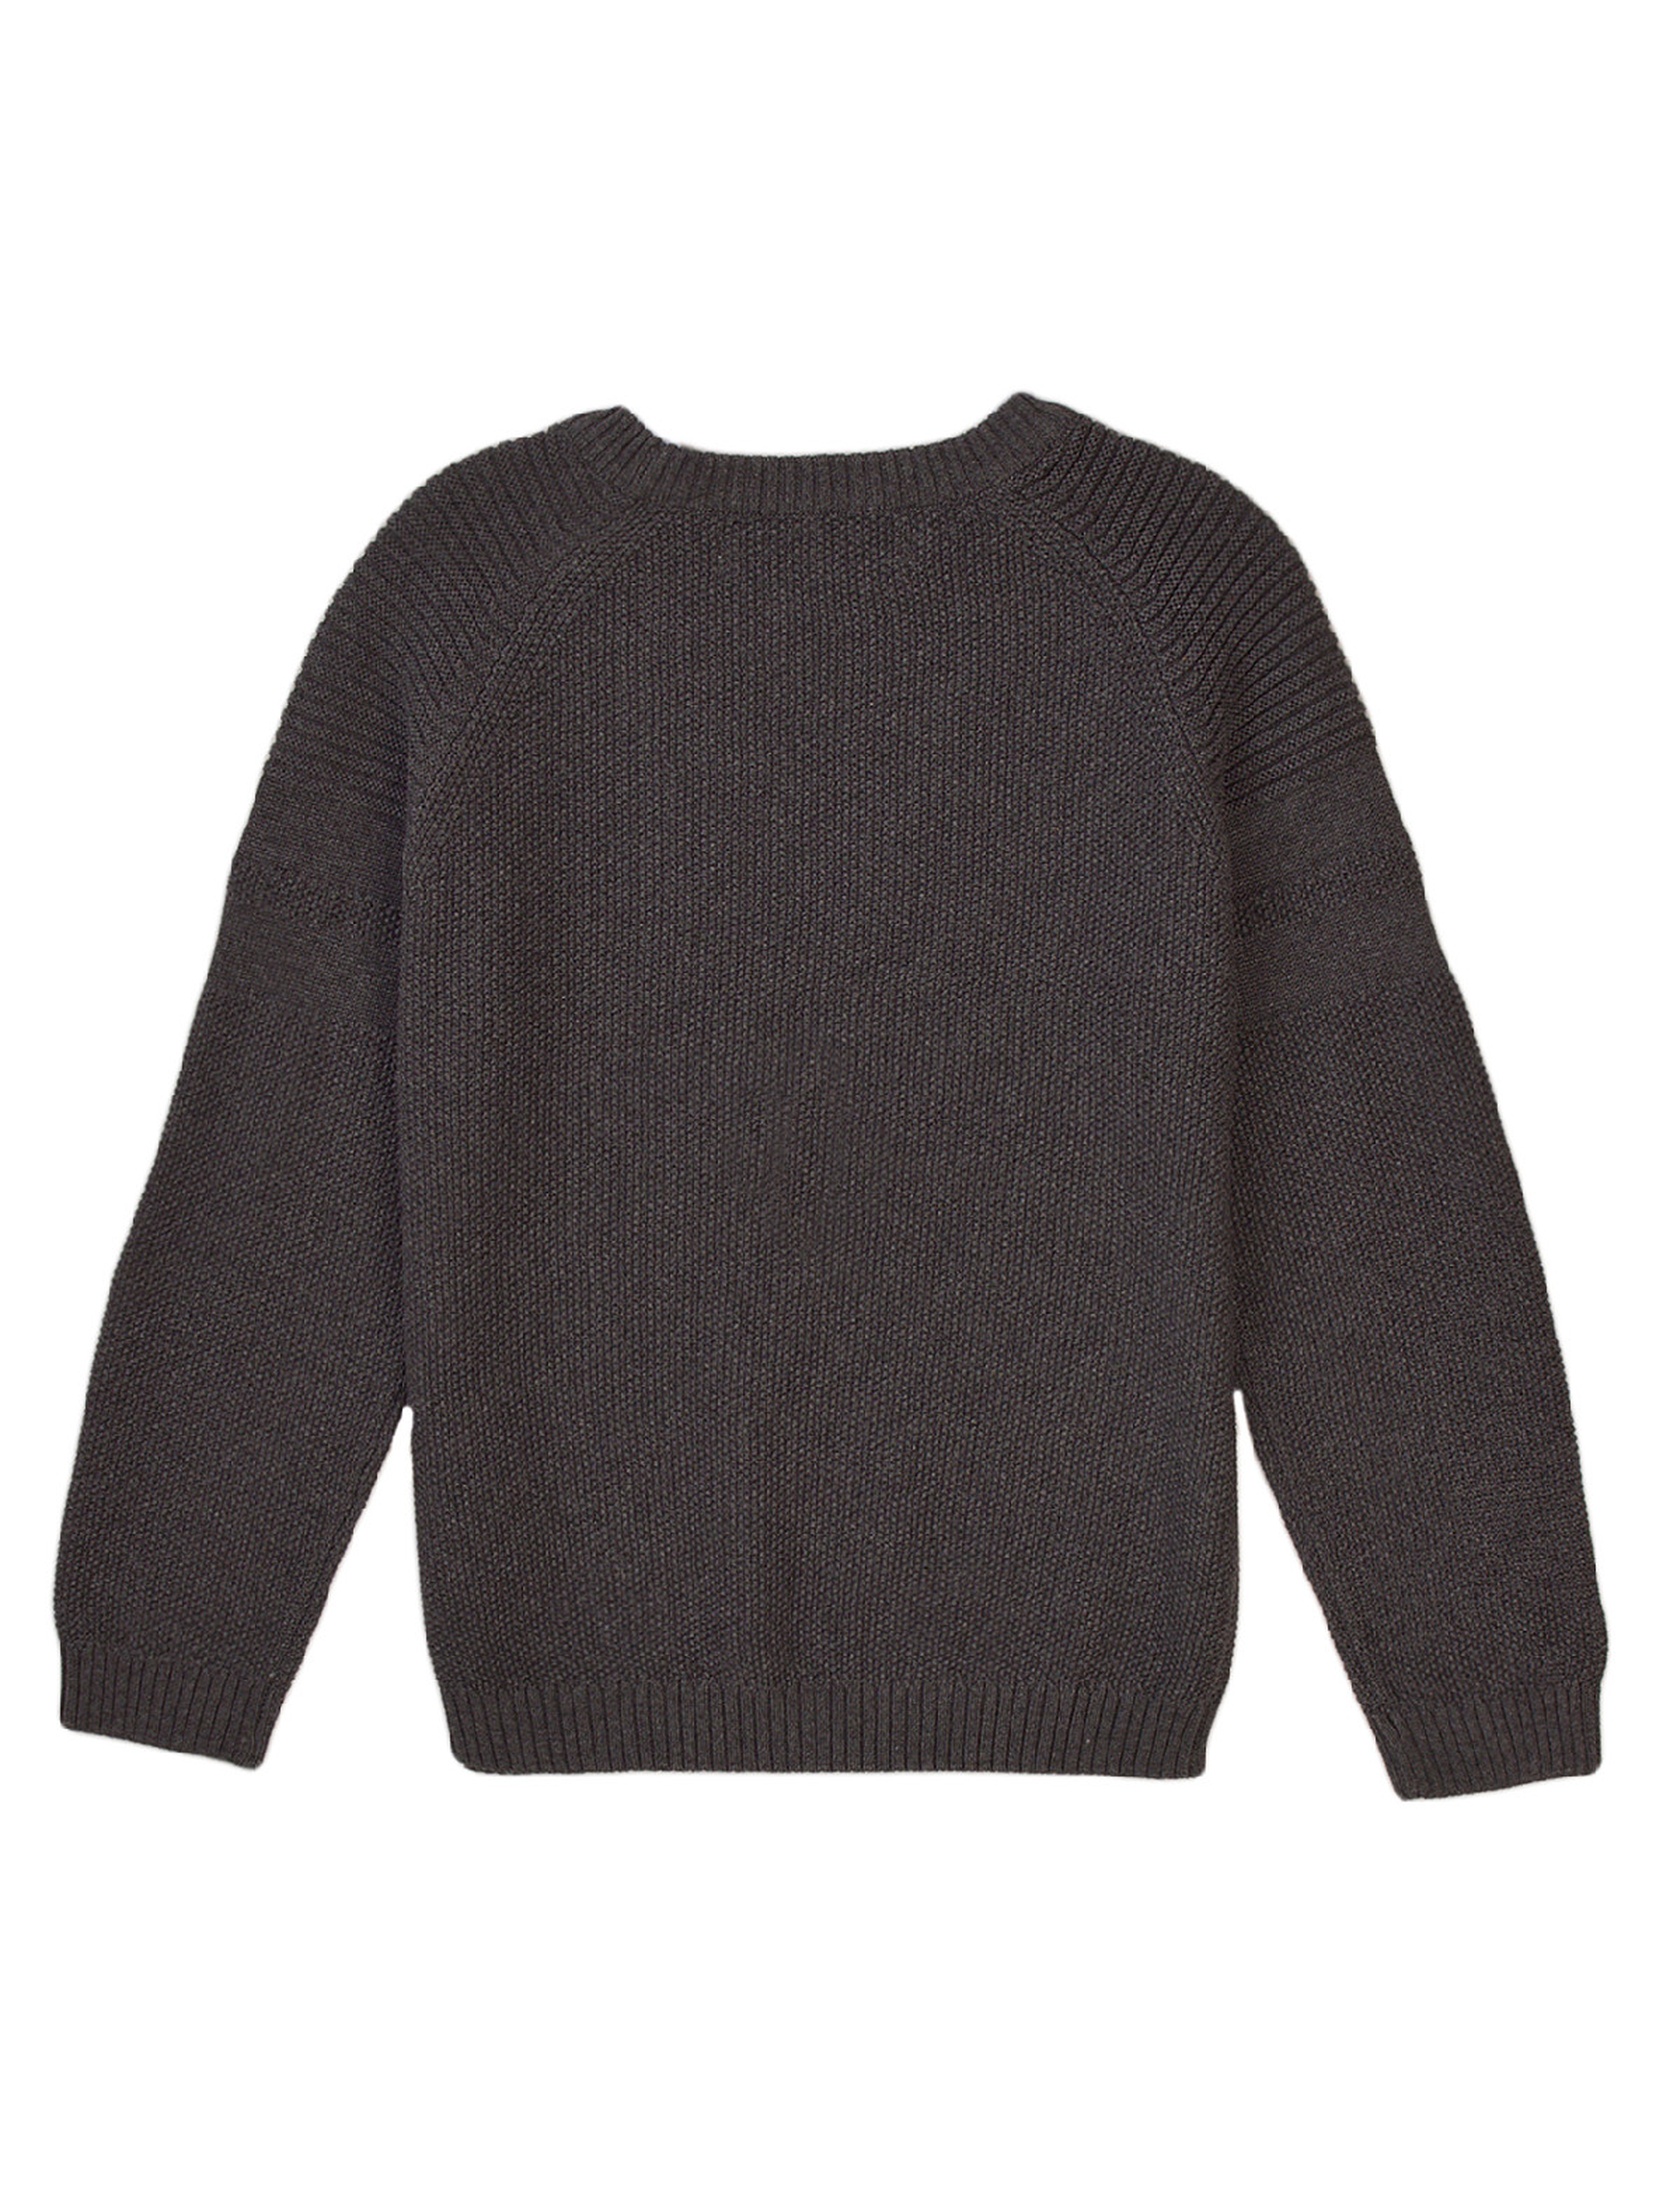 Niemowlęcy klasyczny sweter ozdobiony haftem - szary